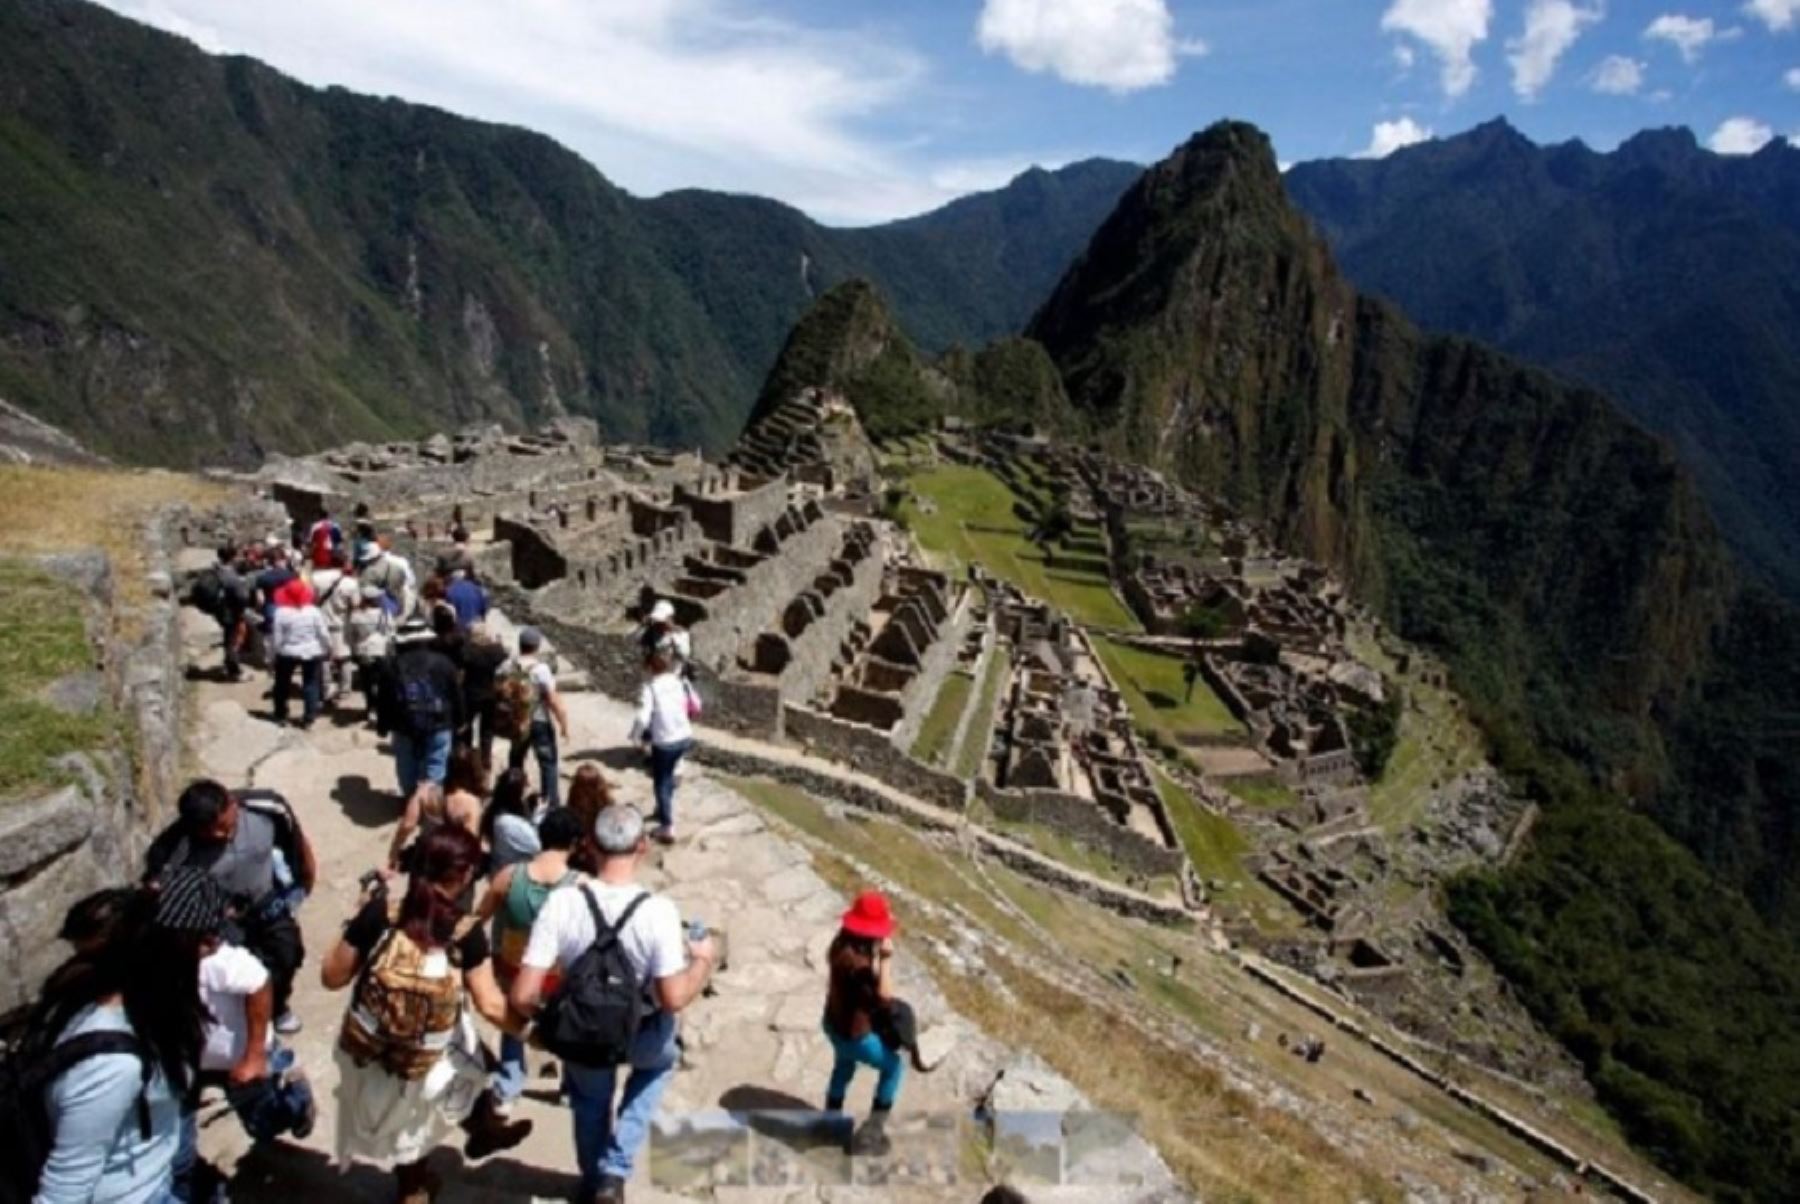 Más de 121,000 entradas a Machu Picchu se vendieron a través de la plataforma virtual tuboleto.cultura.pe, informó el Ministerio de Cultura. ANDINA/Difusión